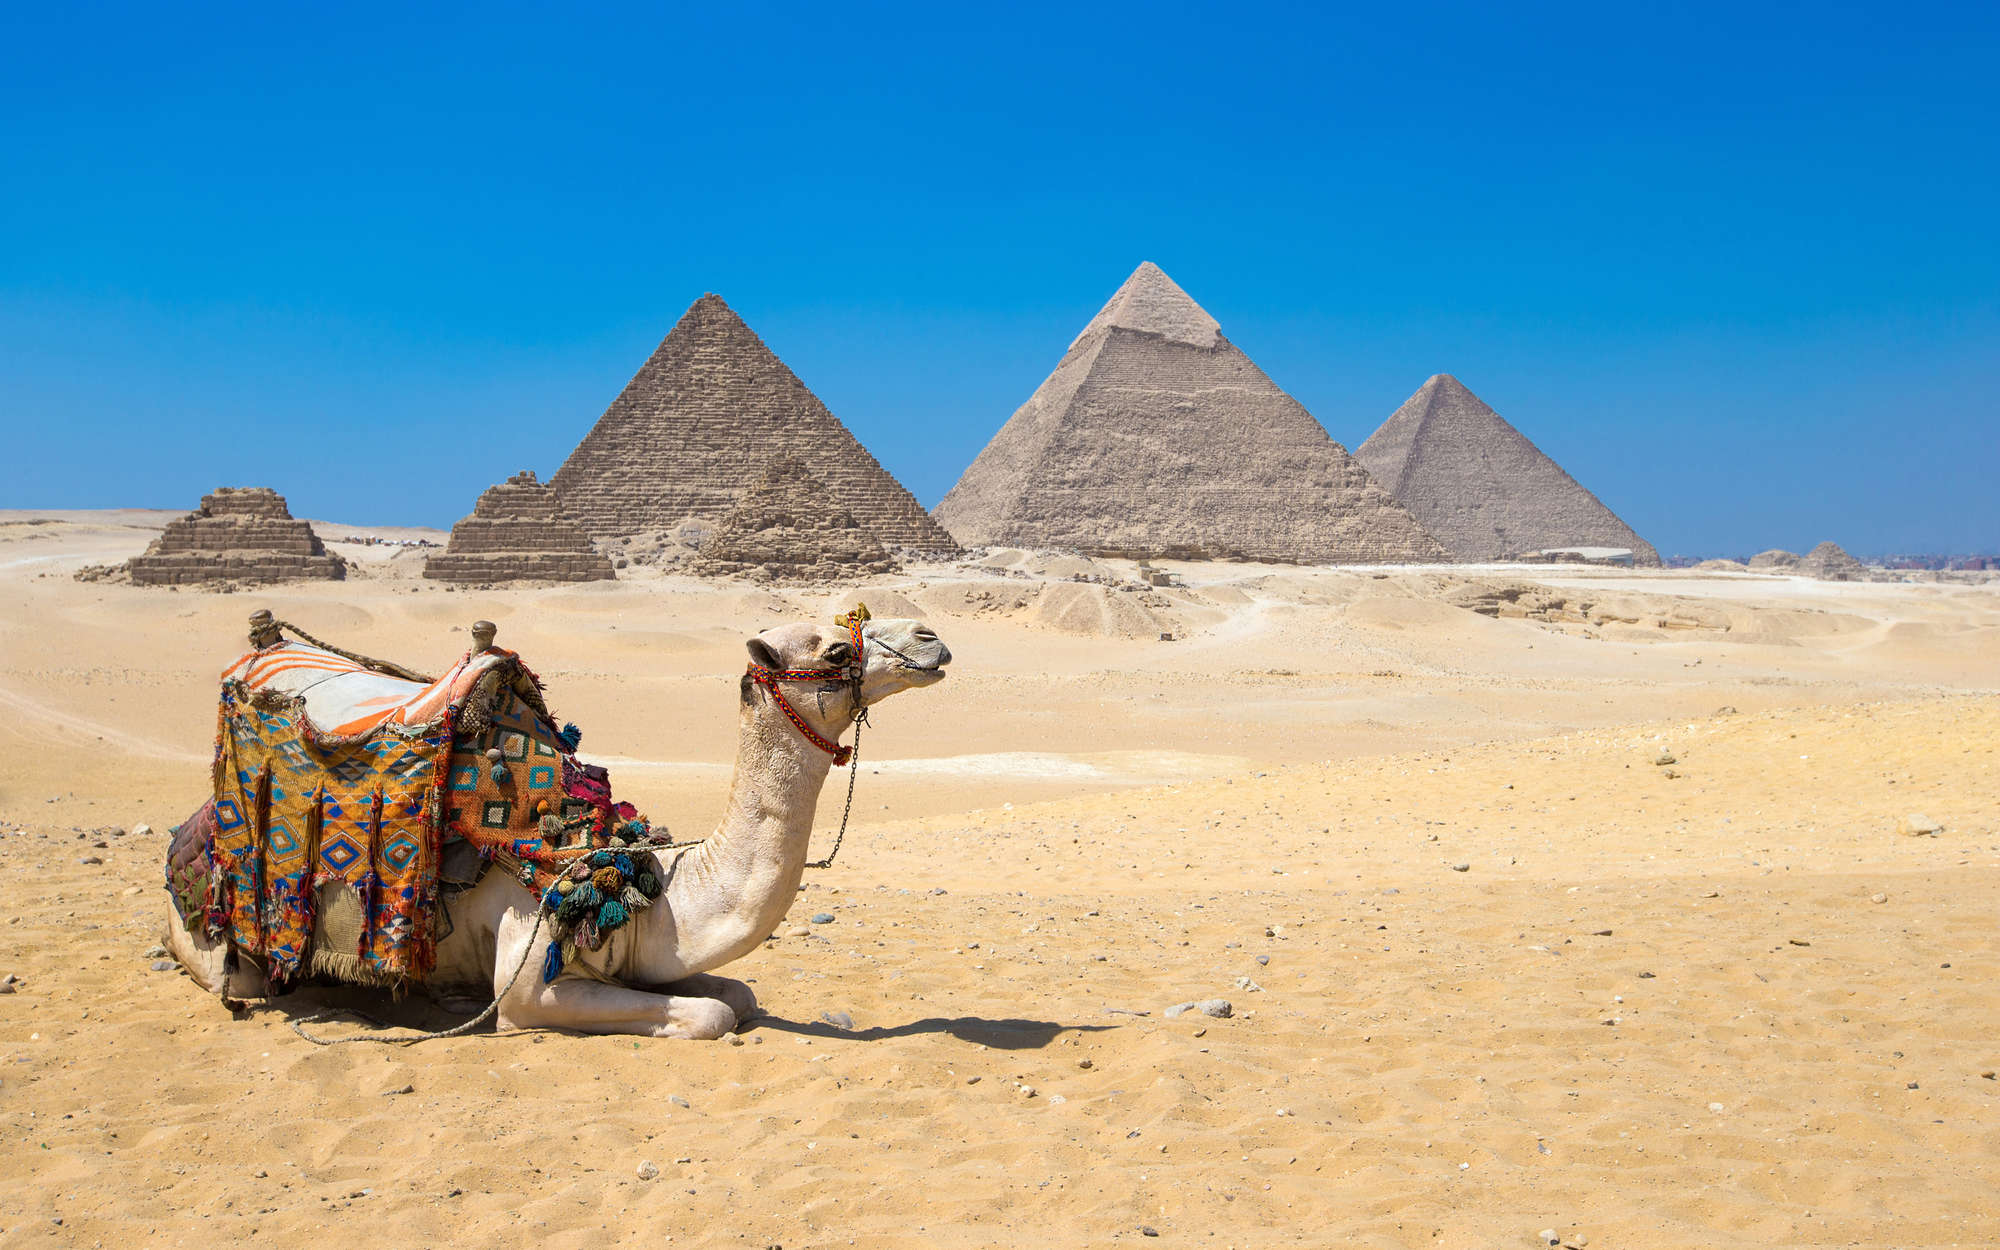             Pyramids of Giza with Camel Wallpaper - Matt Smooth Non-woven
        